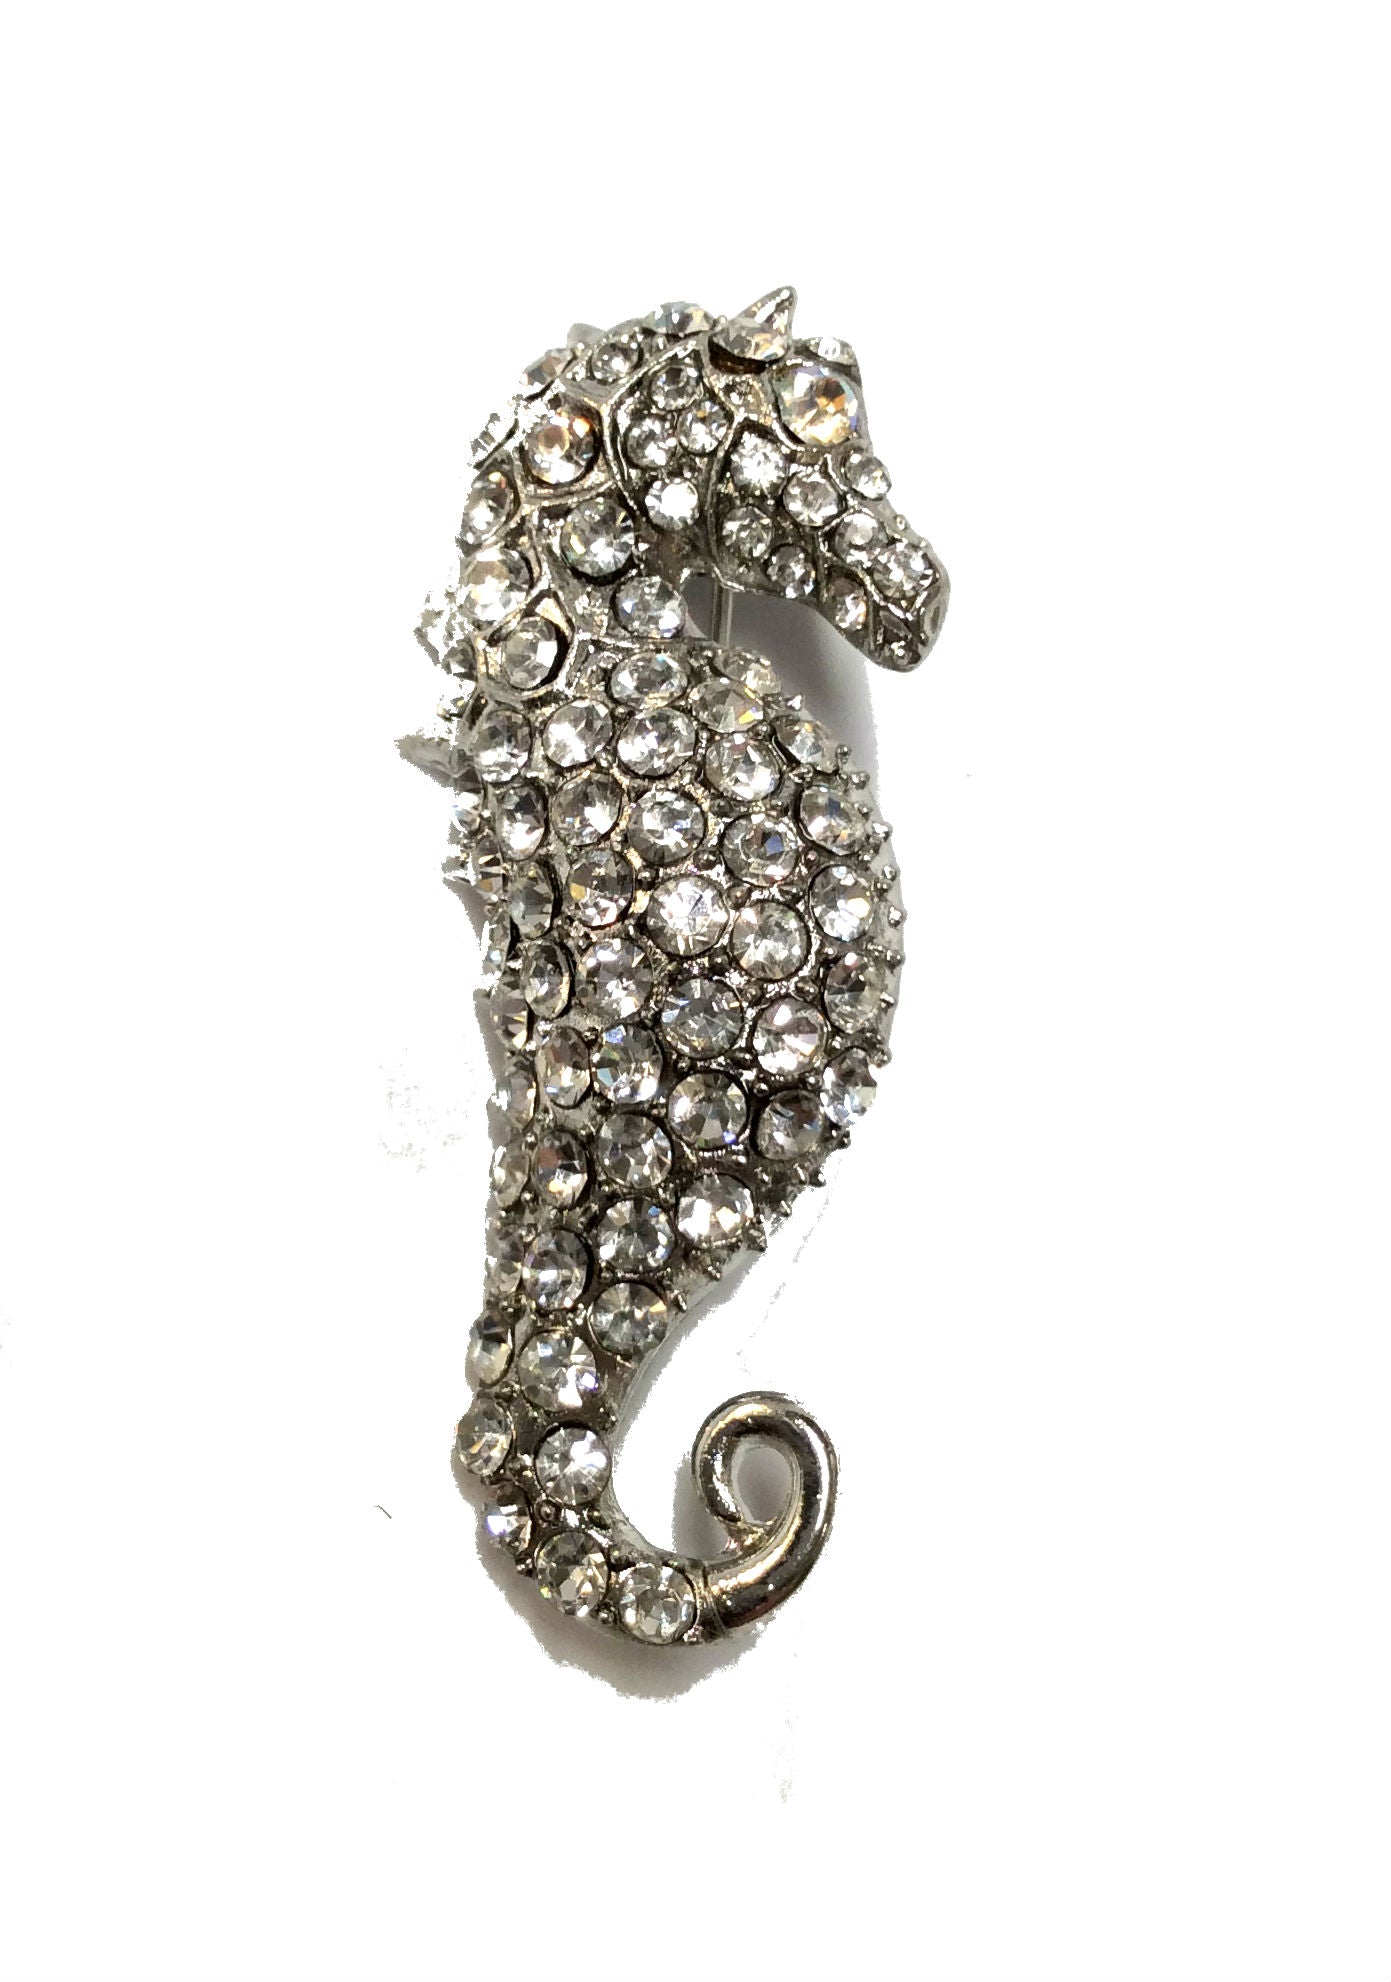 Seahorse Pin#28-11179CL